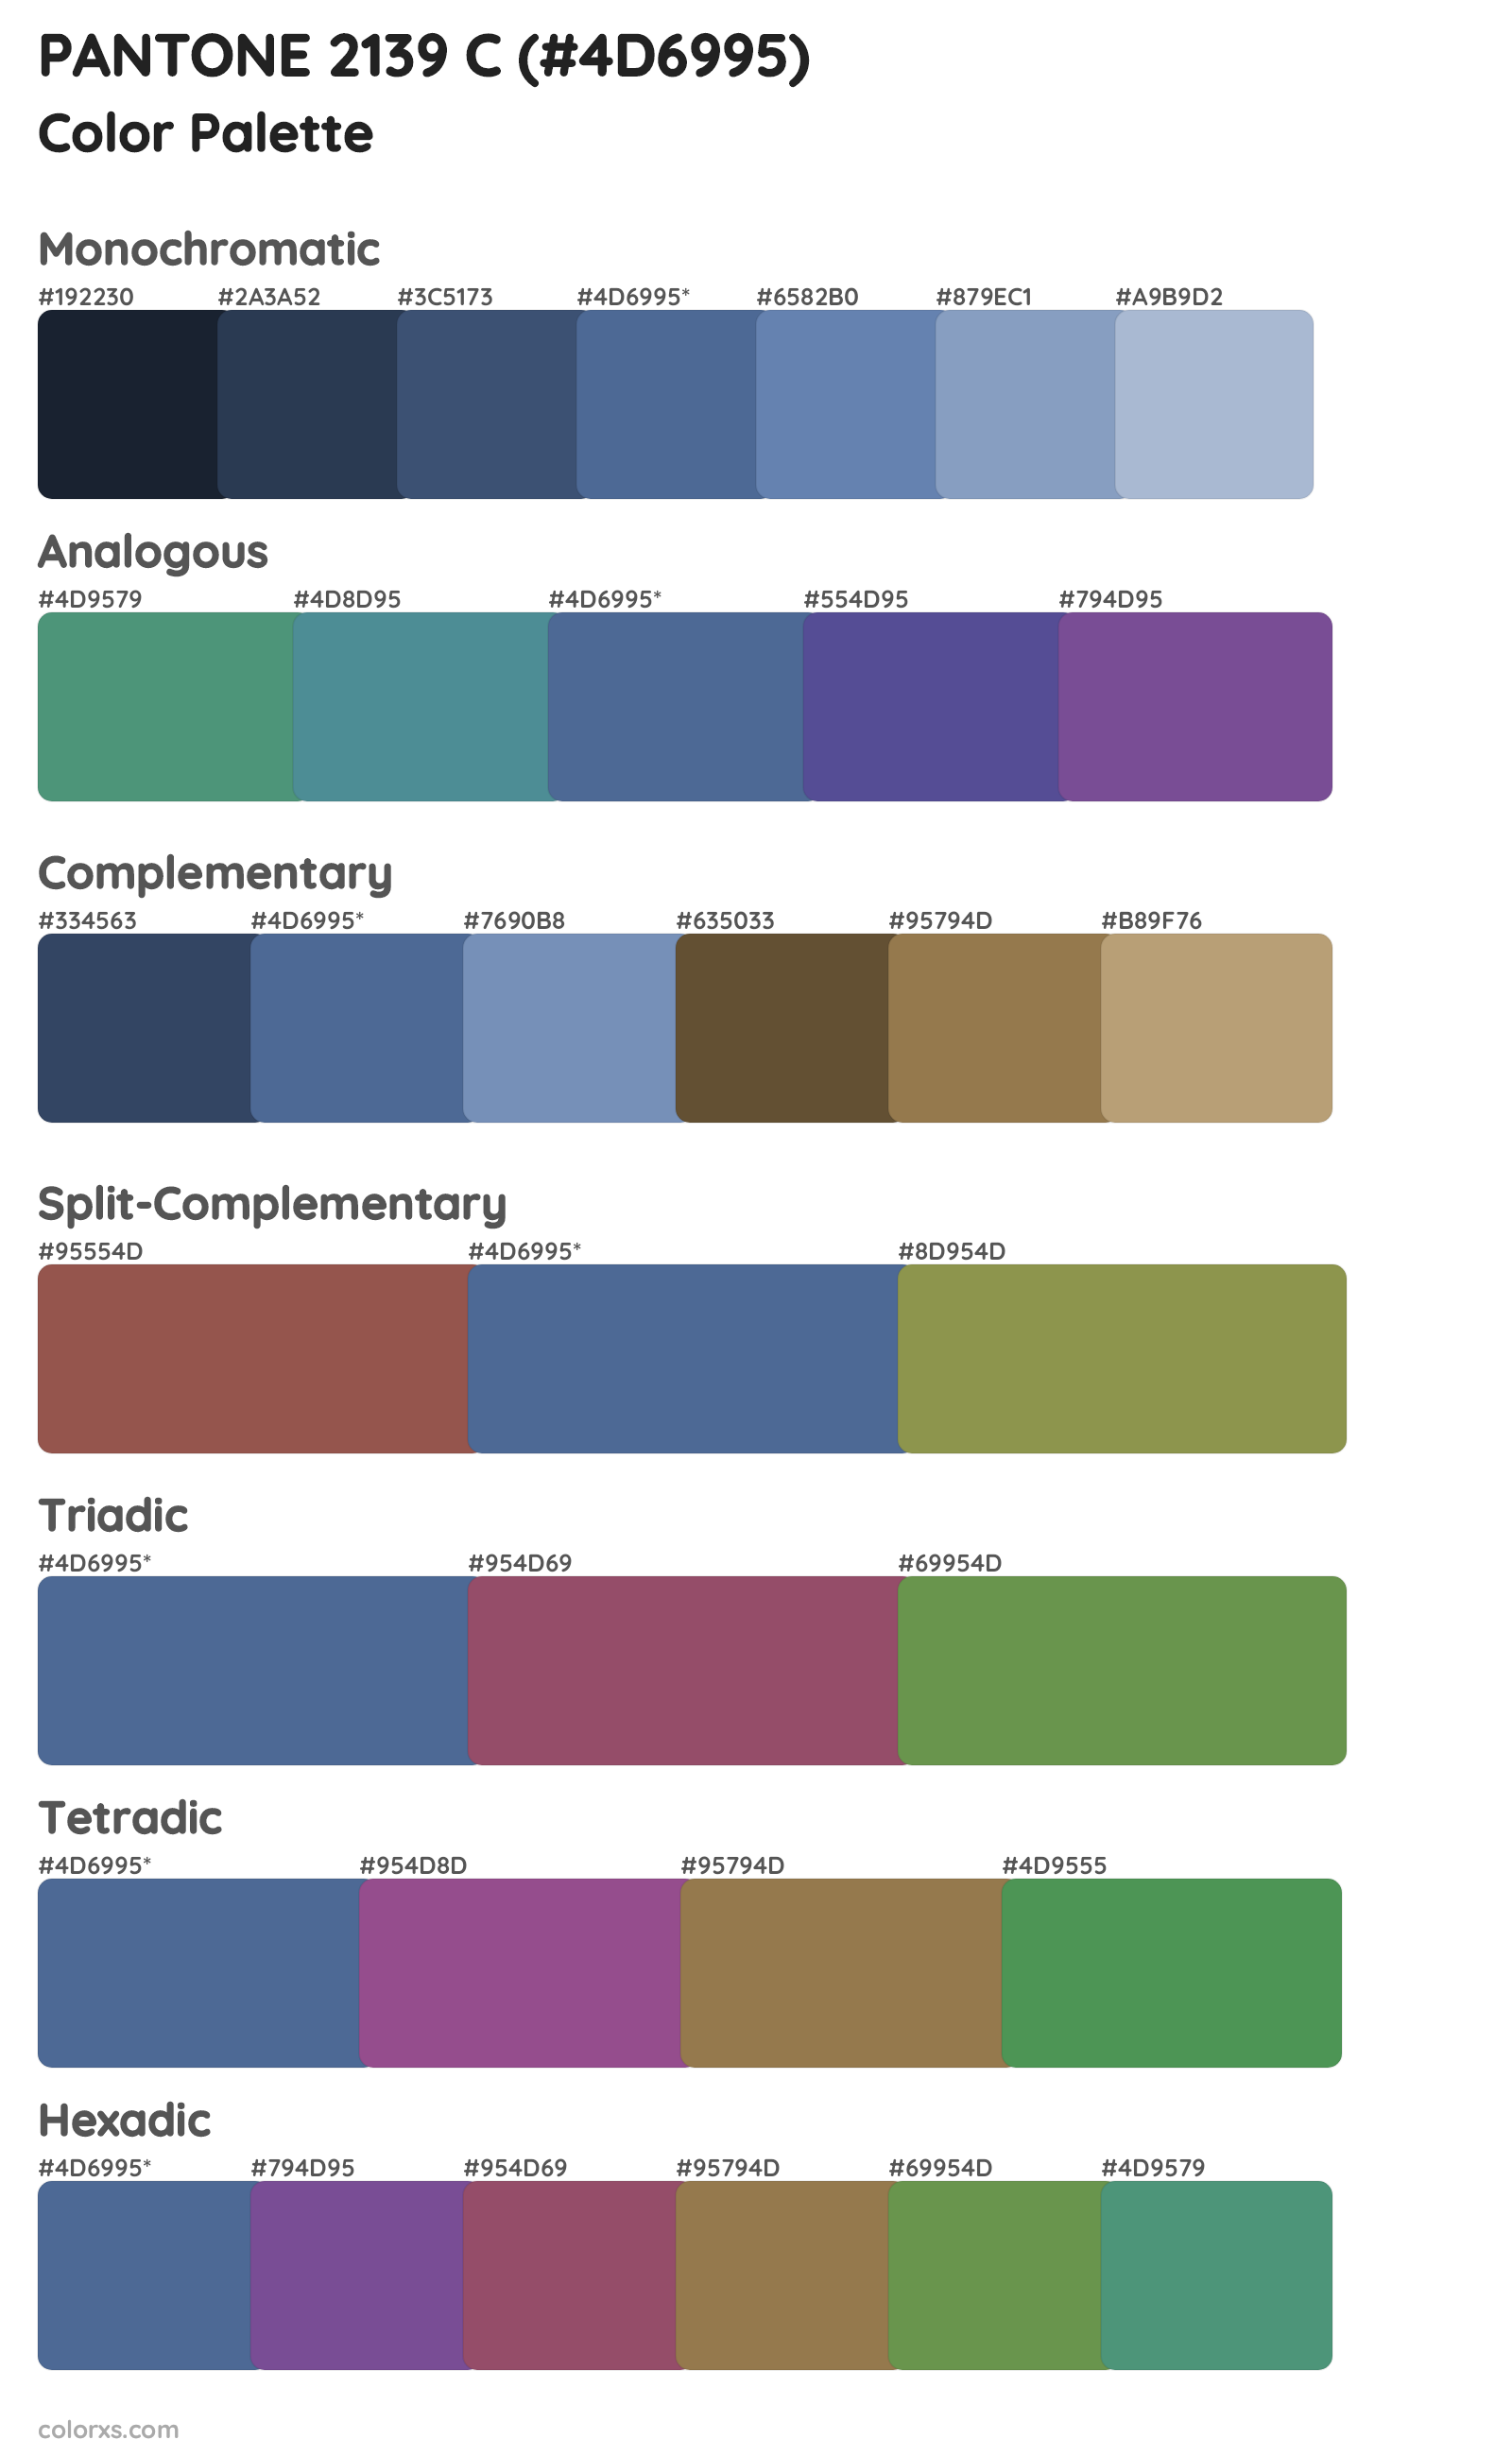 PANTONE 2139 C Color Scheme Palettes